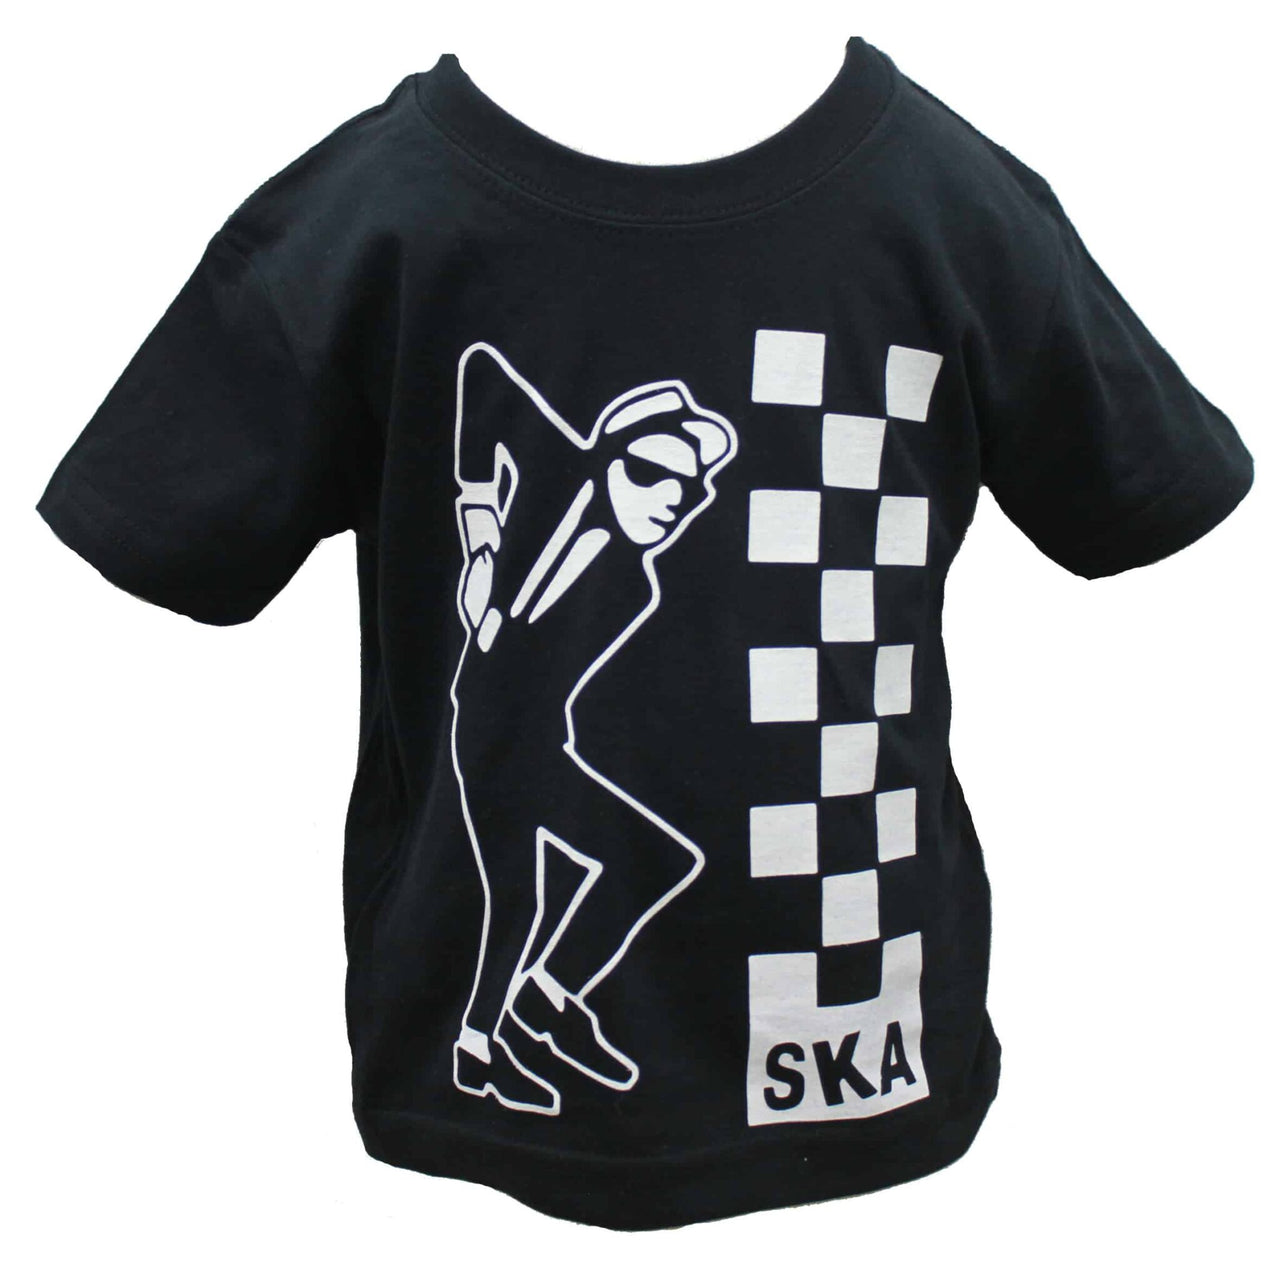 Ska Kids Black T-Shirt